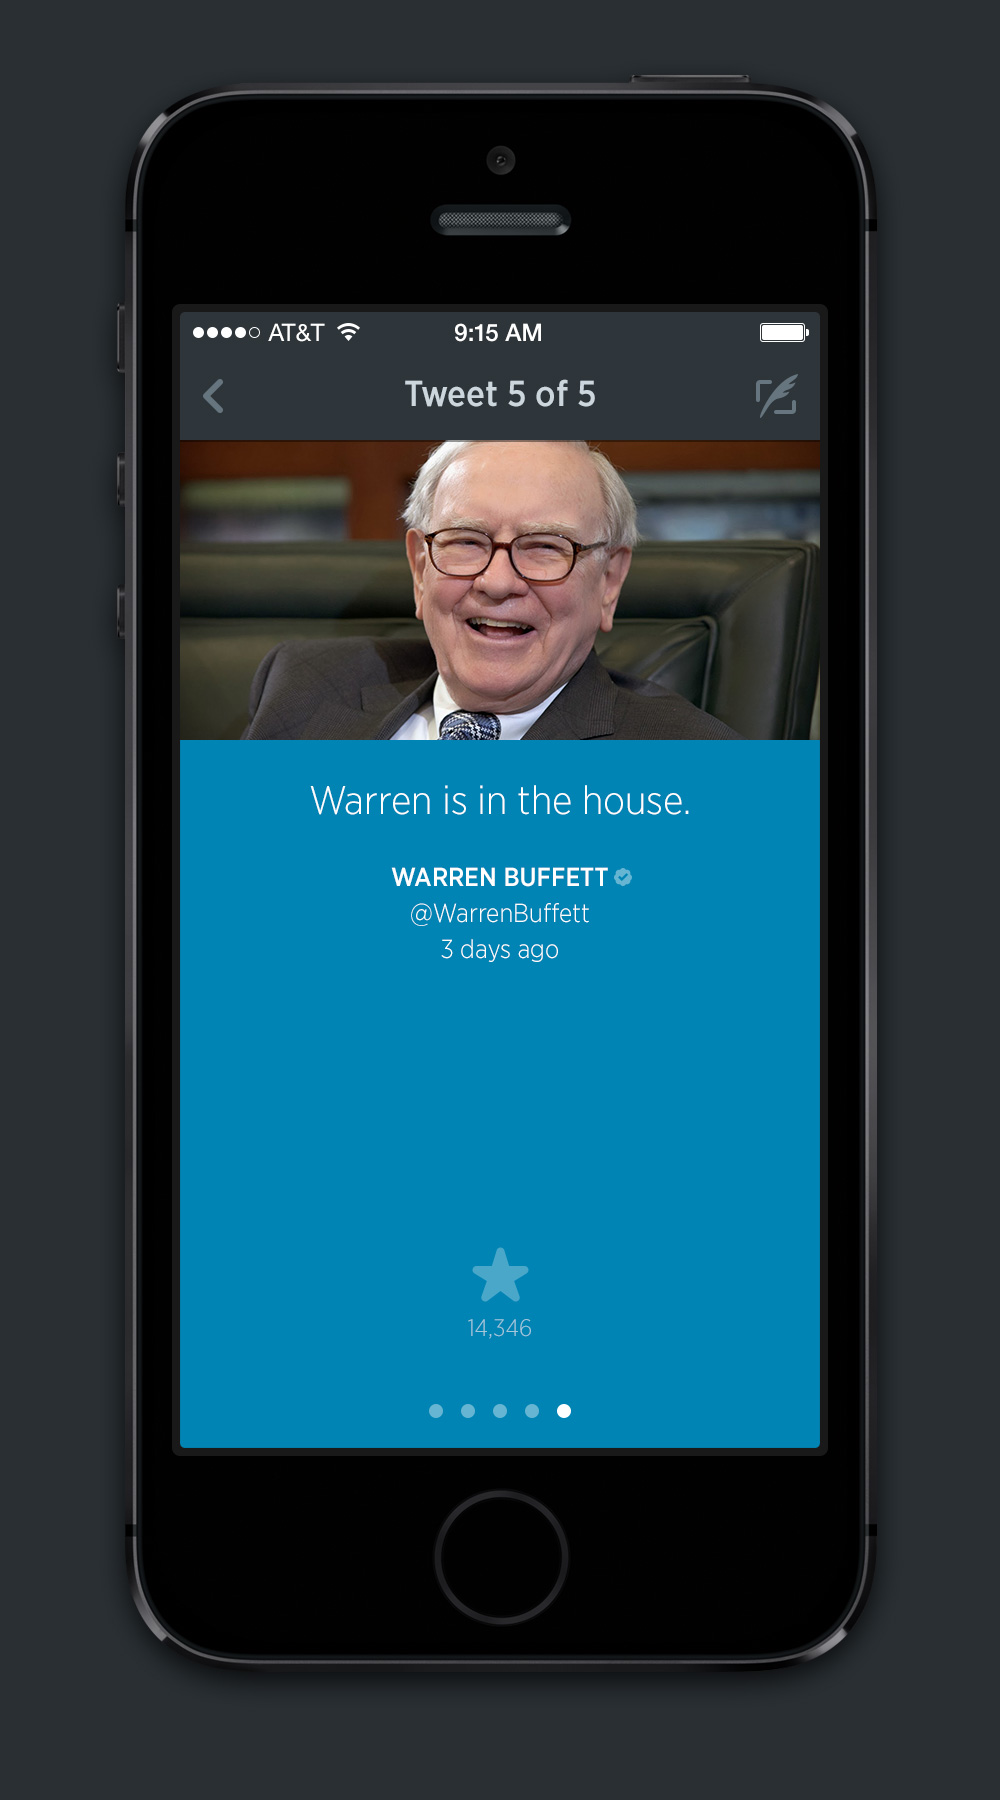 Single-Tweet view - WARREN BUFFETT @WarrenBeffett "Warren is in the house."